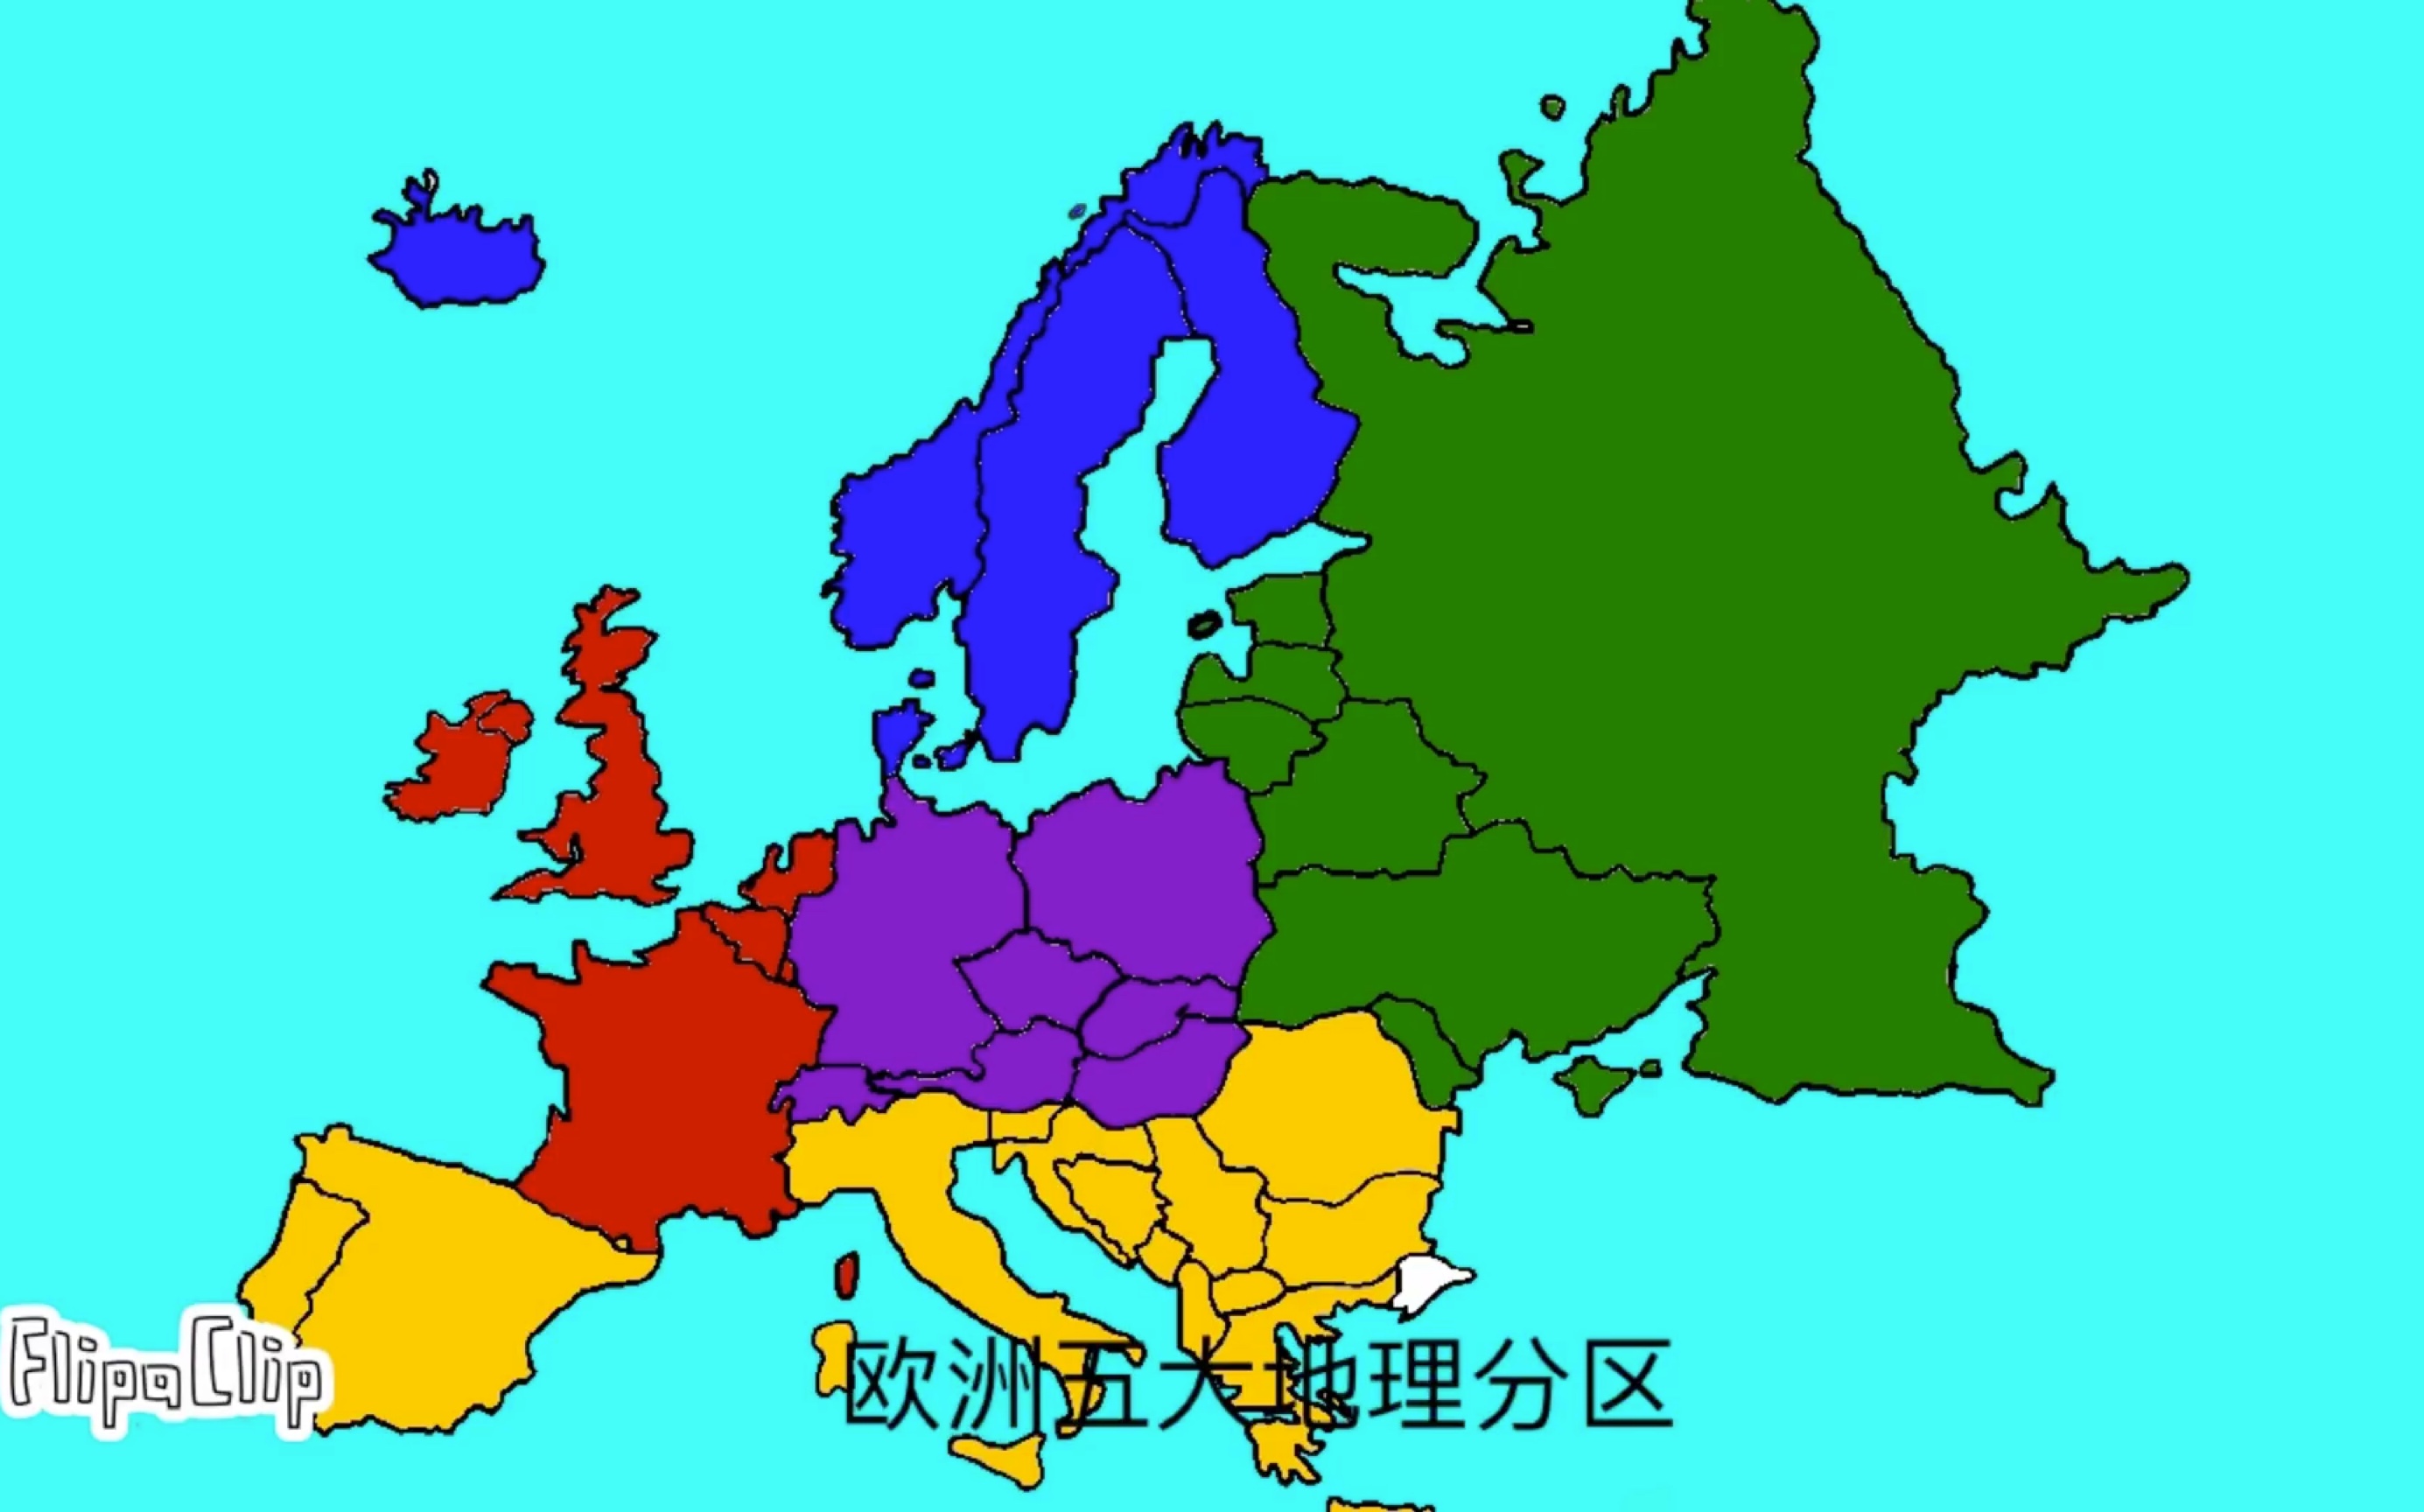 欧洲各国理想疆域整合篇